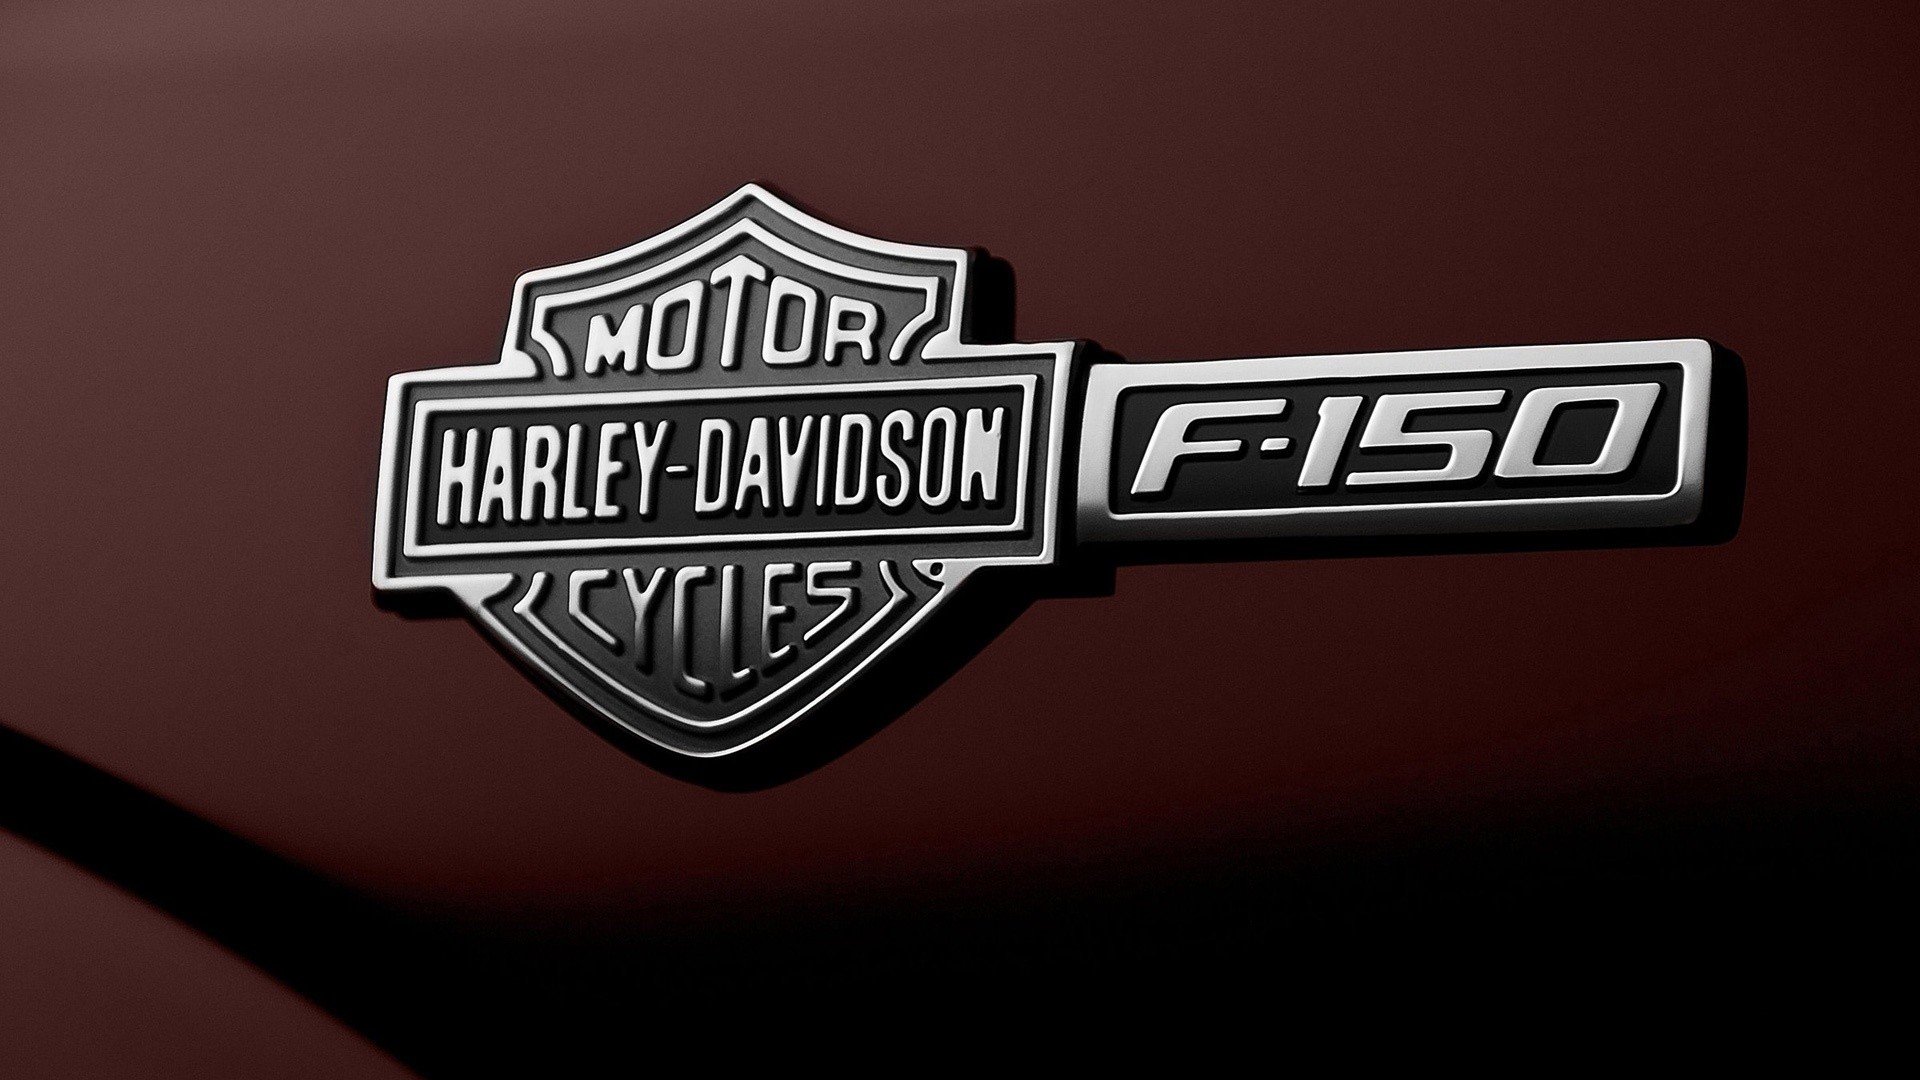 engines, Brands, Motorbikes, Logos, Harley, Davidson Wallpaper